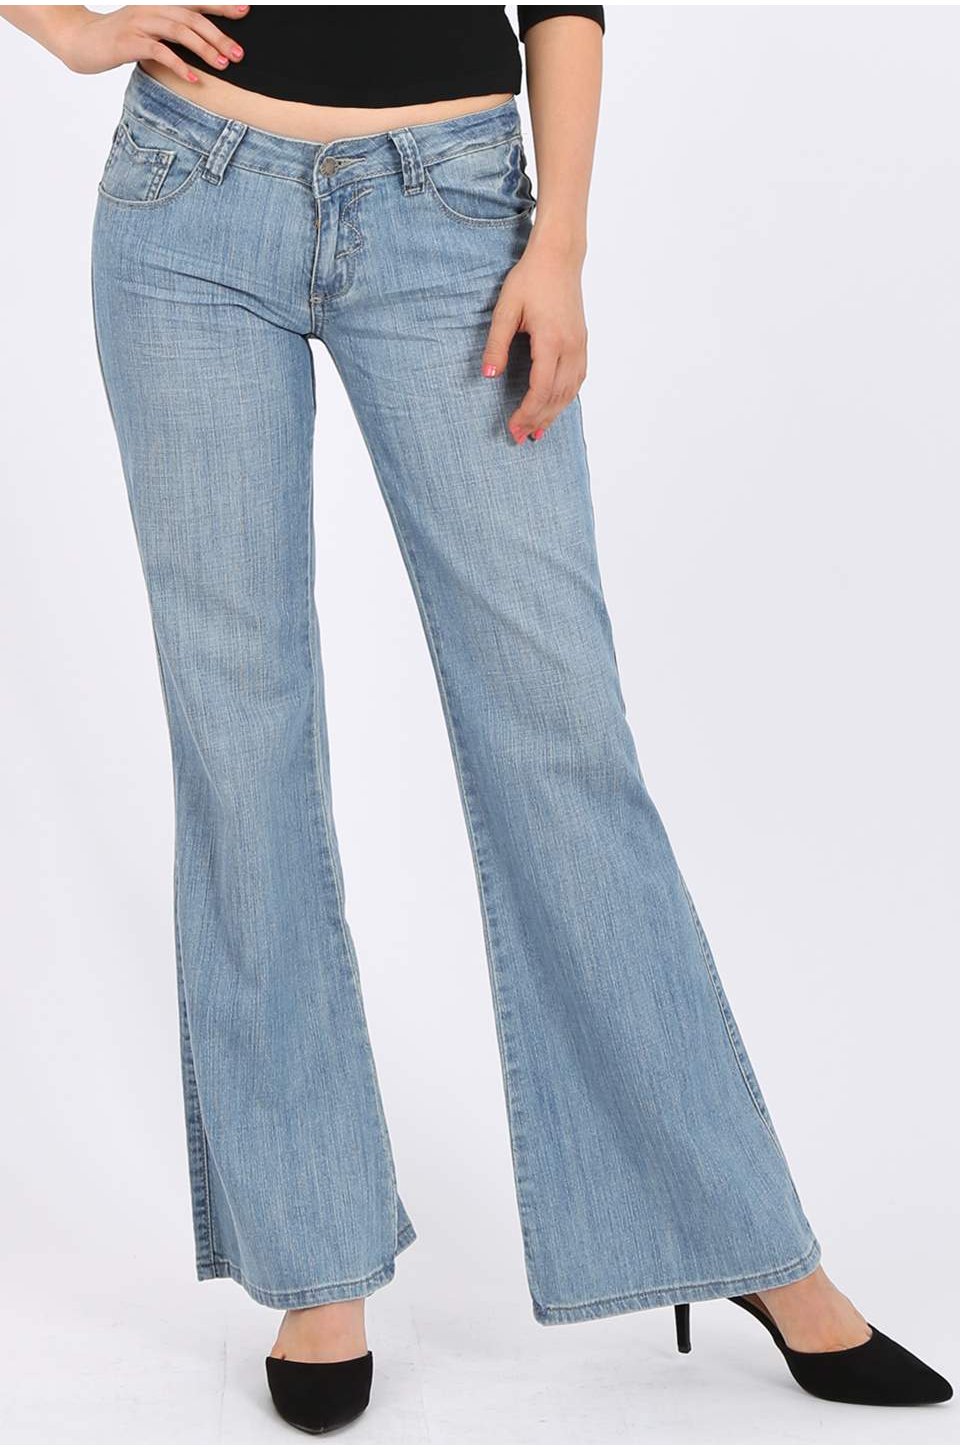 women's boot leg jeans in light blue wash